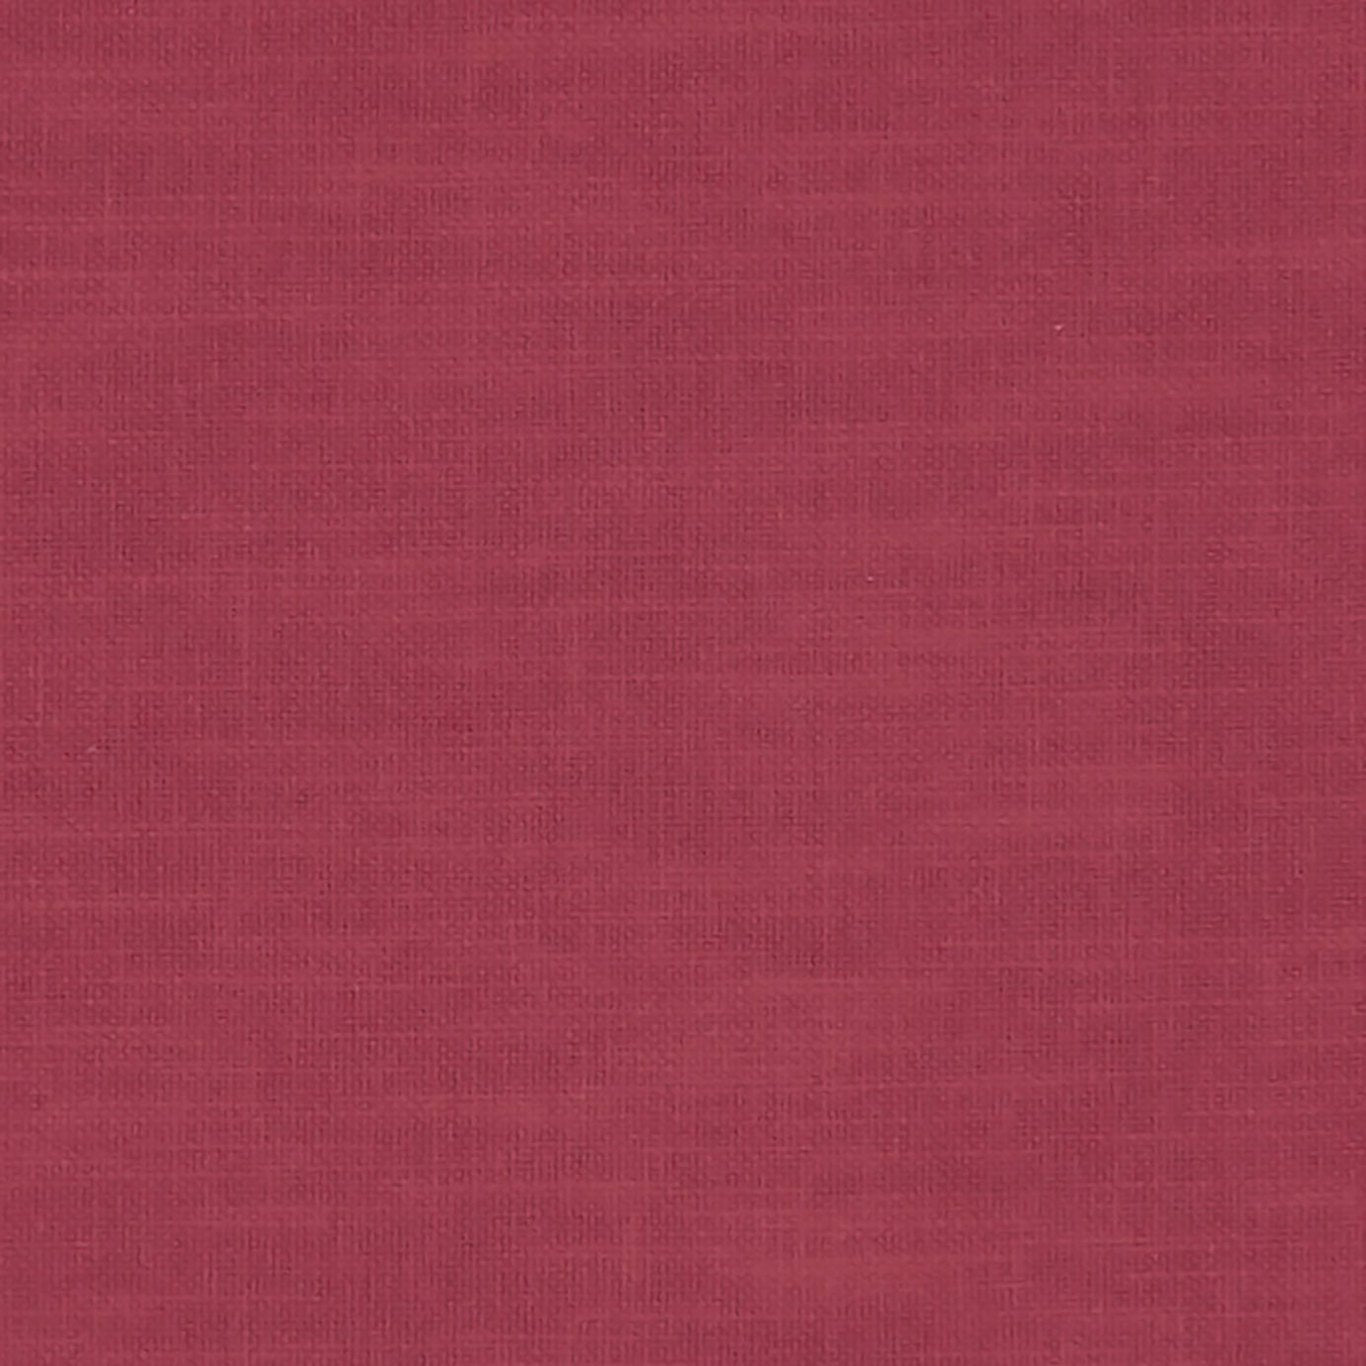 Amalfi Fabric by Clarke & Clarke - F1239/49 - Peony